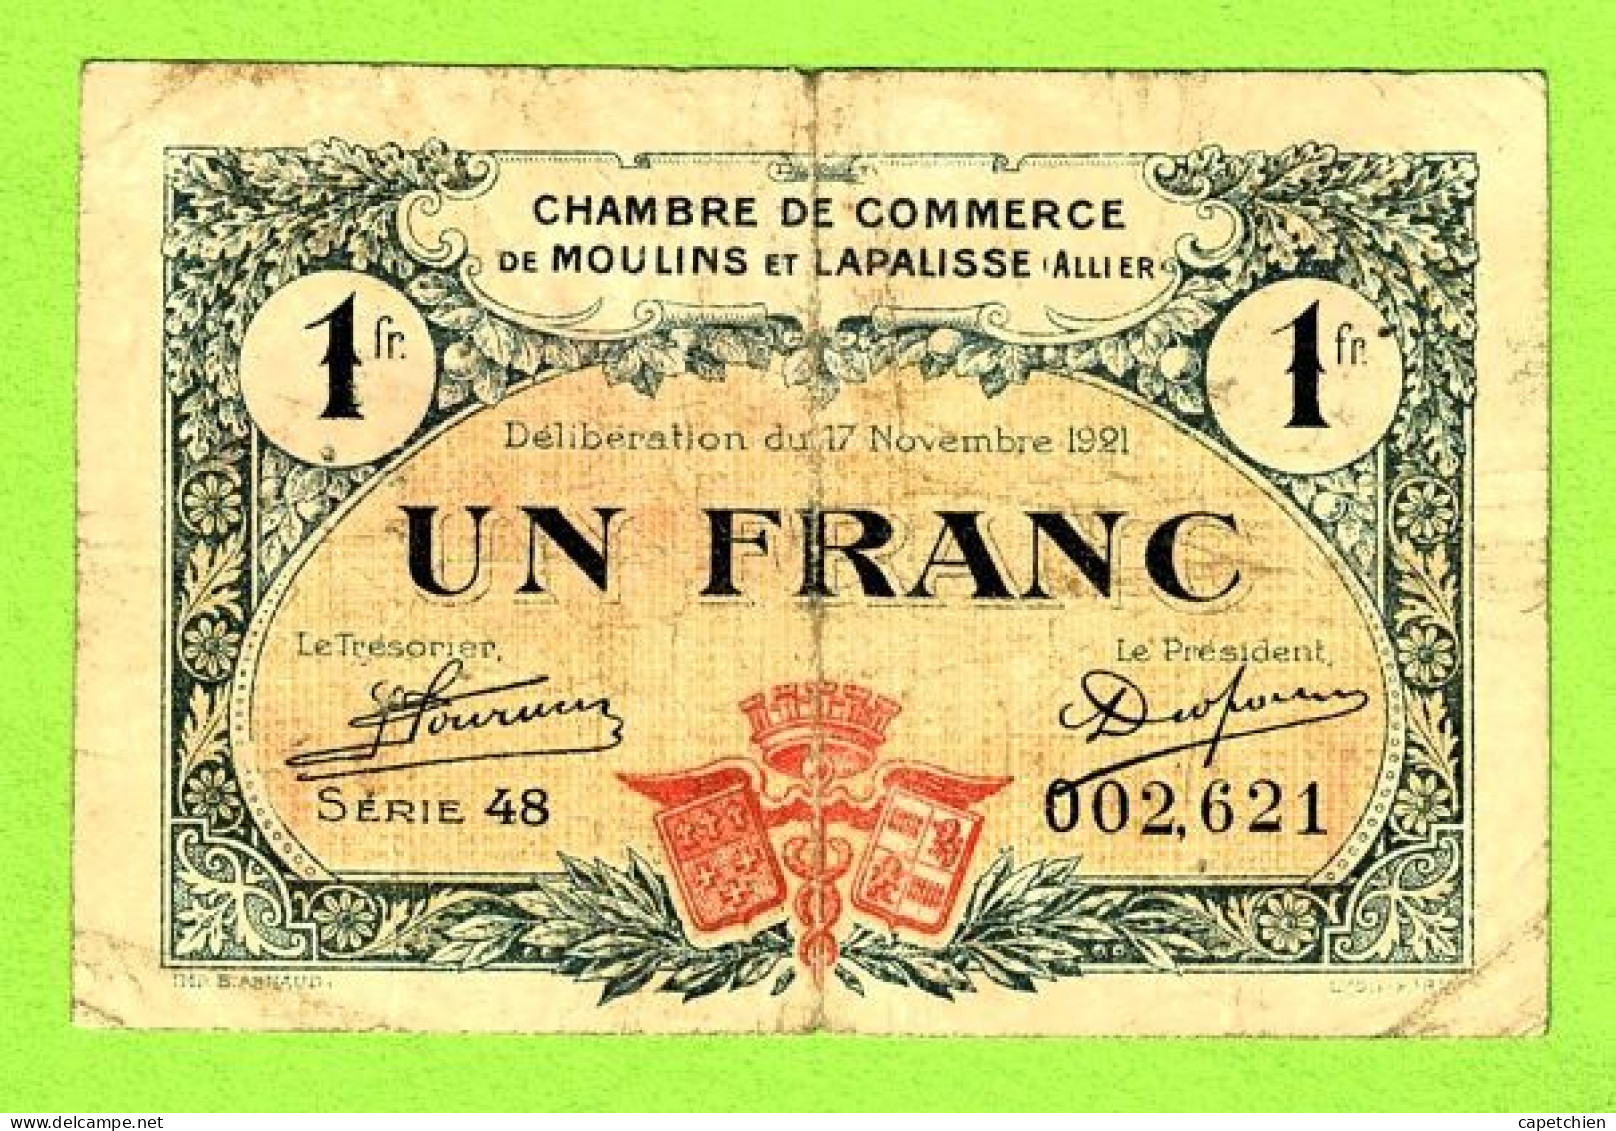 FRANCE /  CHAMBRE De COMMERCE De MOULINS & LAPALISSE / 1 FRANC / 17 NOVEMBRE 1921  N° 002,621 / SERIE 48 - Cámara De Comercio